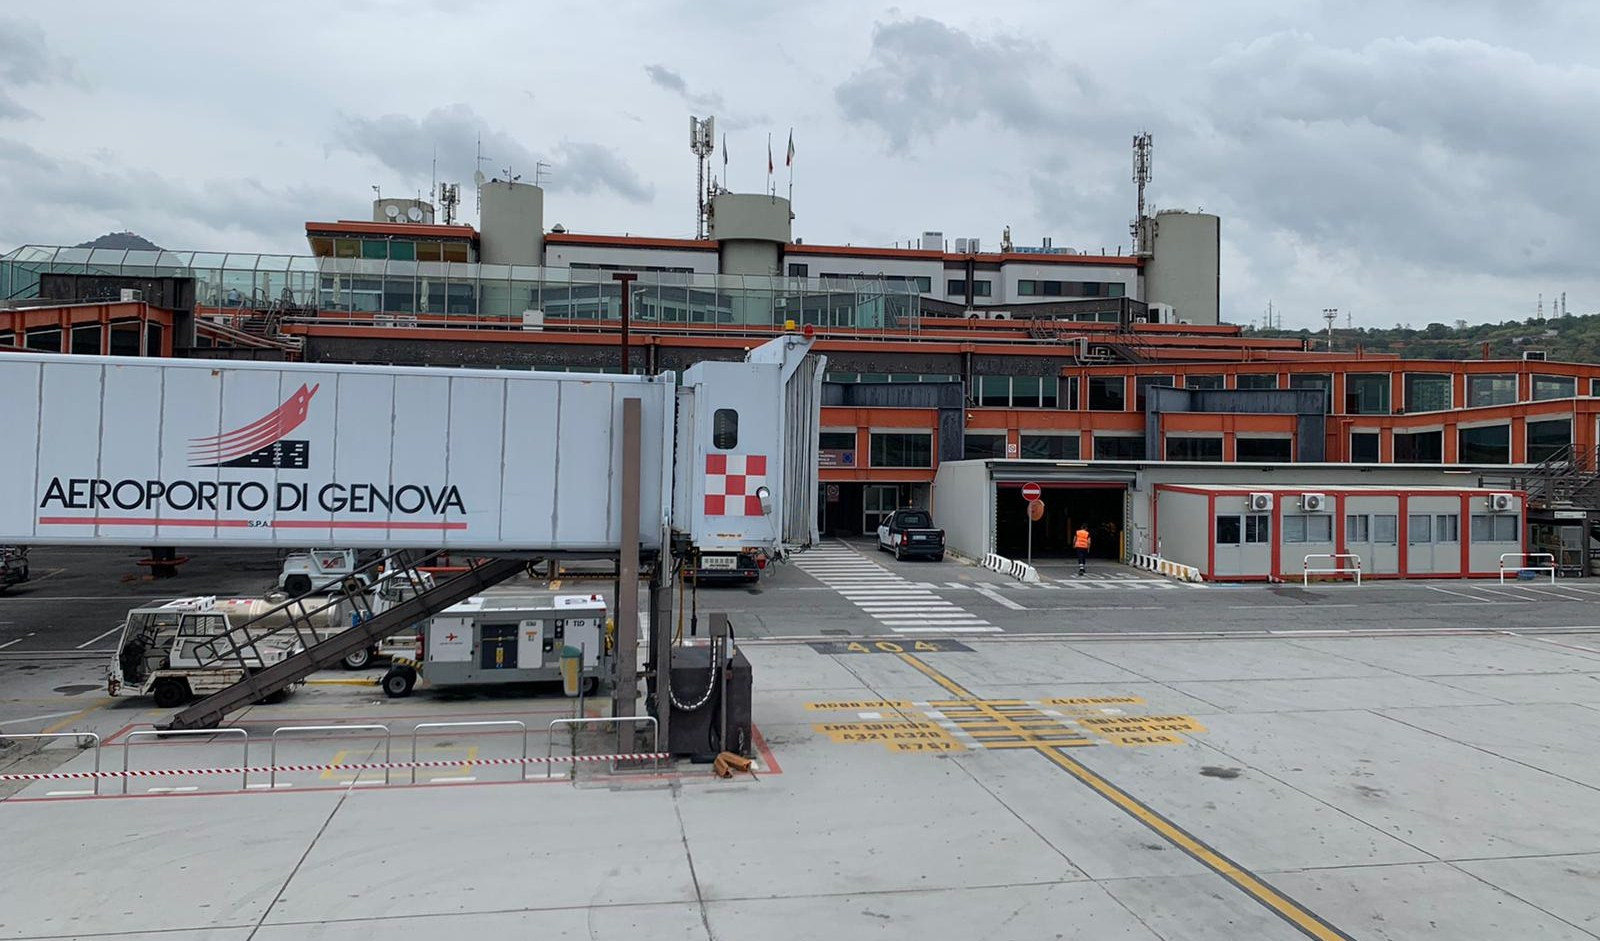 Aeroporto di Genova, Piaggio e Aeroclub a rischio